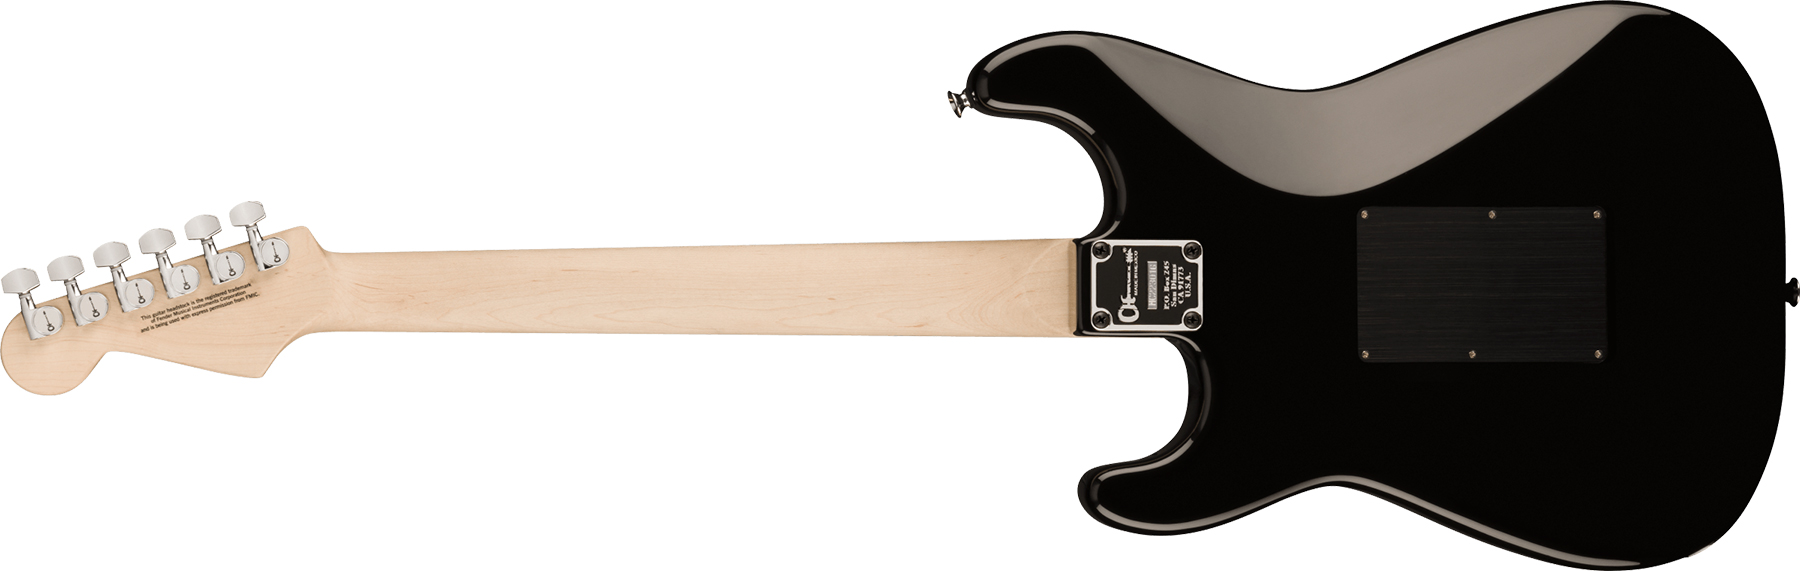 Charvel So-cal Style 1 Hss Fr M Pro-mod Seymour Duncan Mn - Gloss Black - E-Gitarre in Str-Form - Variation 1